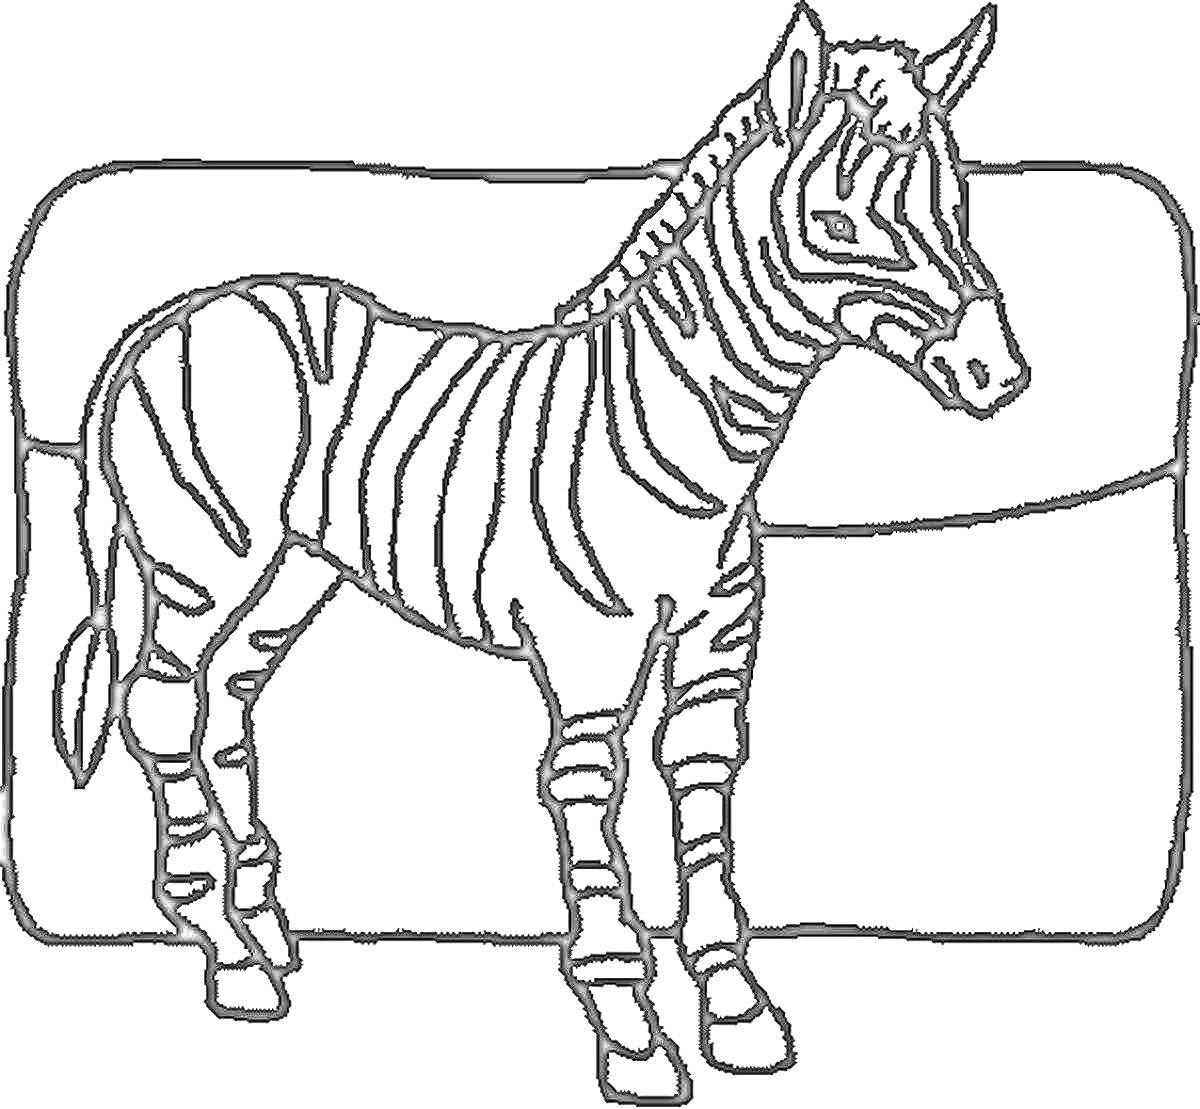 Раскраска Раскраска с изображением зебры на фоне прямоугольной формы